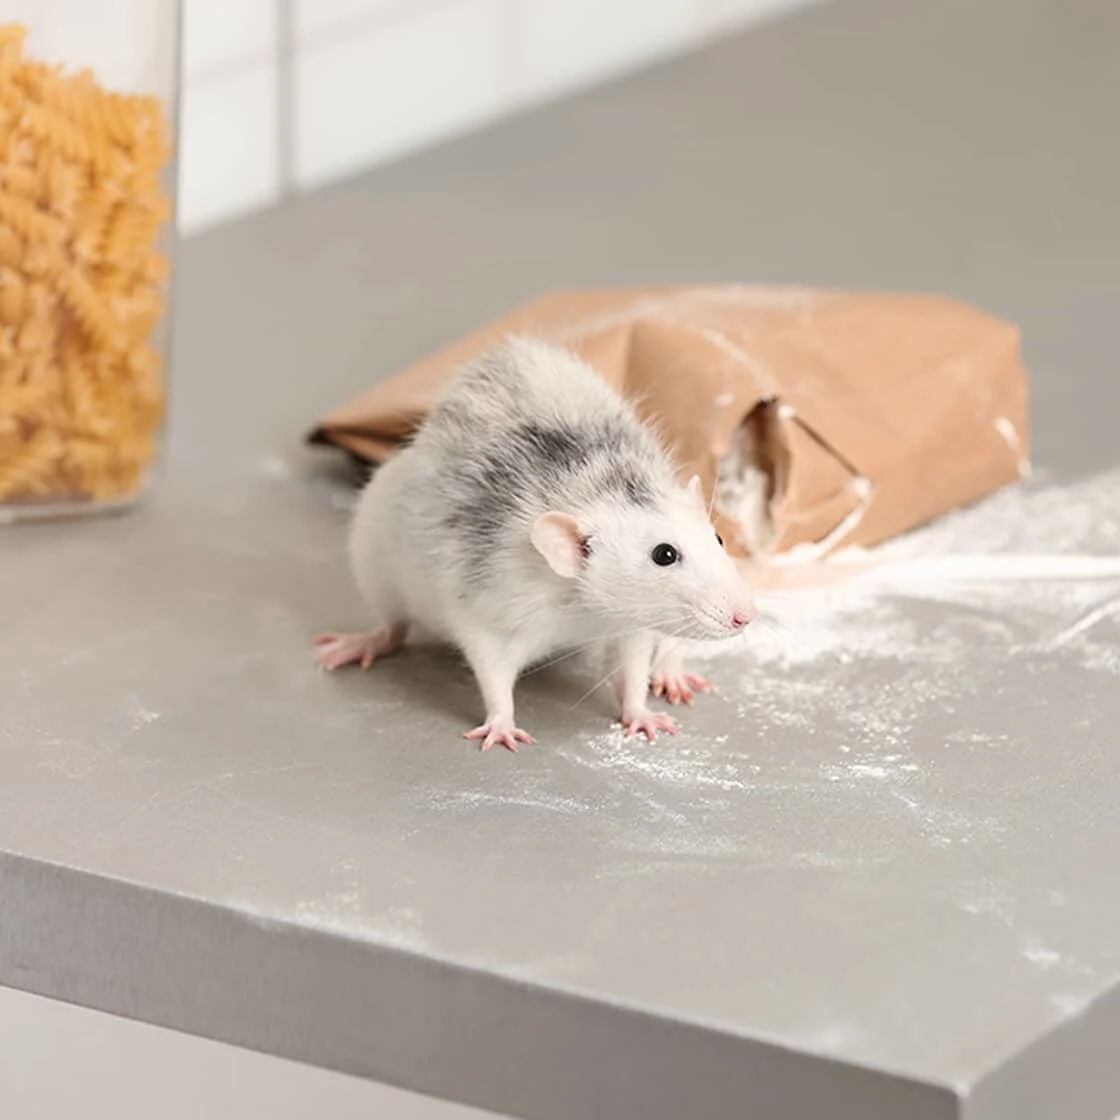 Comment savoir s’il y a des souris dans votre maison